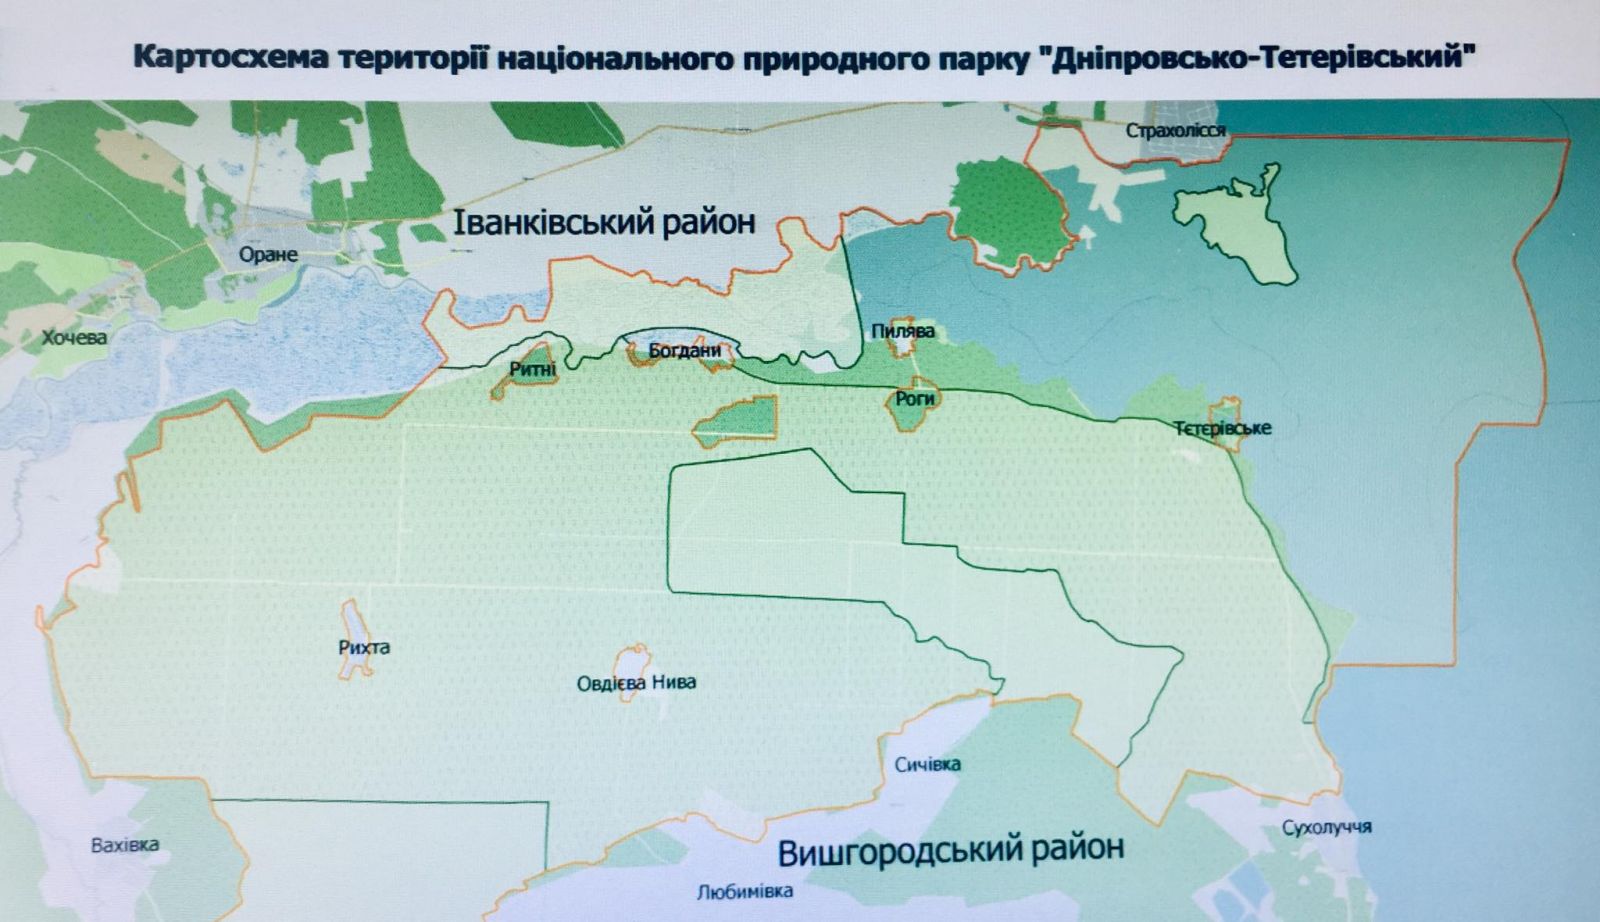 Под Киевом создадут Днепровско-Тетеревский национальный природный парк. Фото: menr.gov.ua